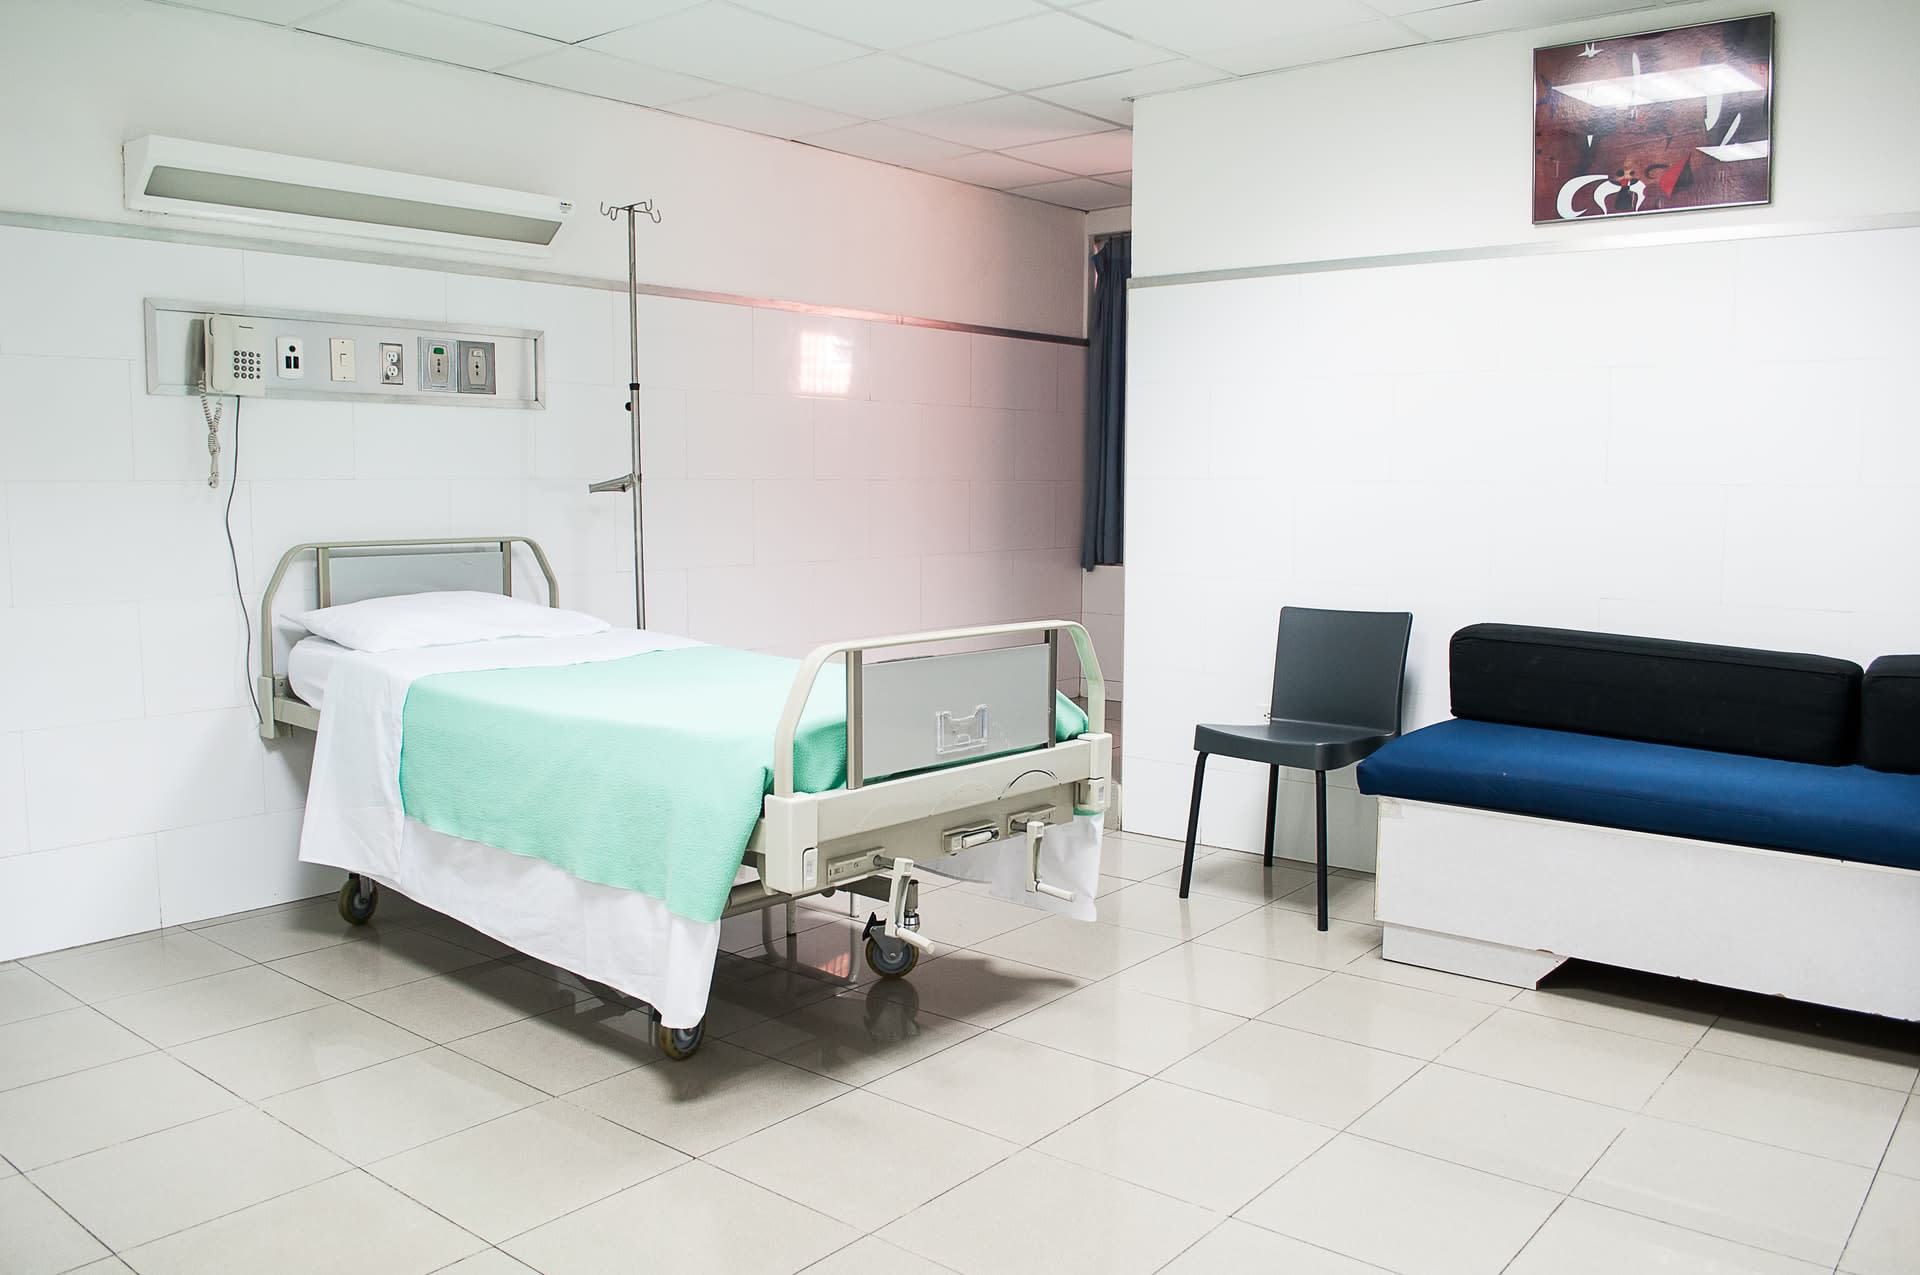 Łóżko szpitalne w pustej sali